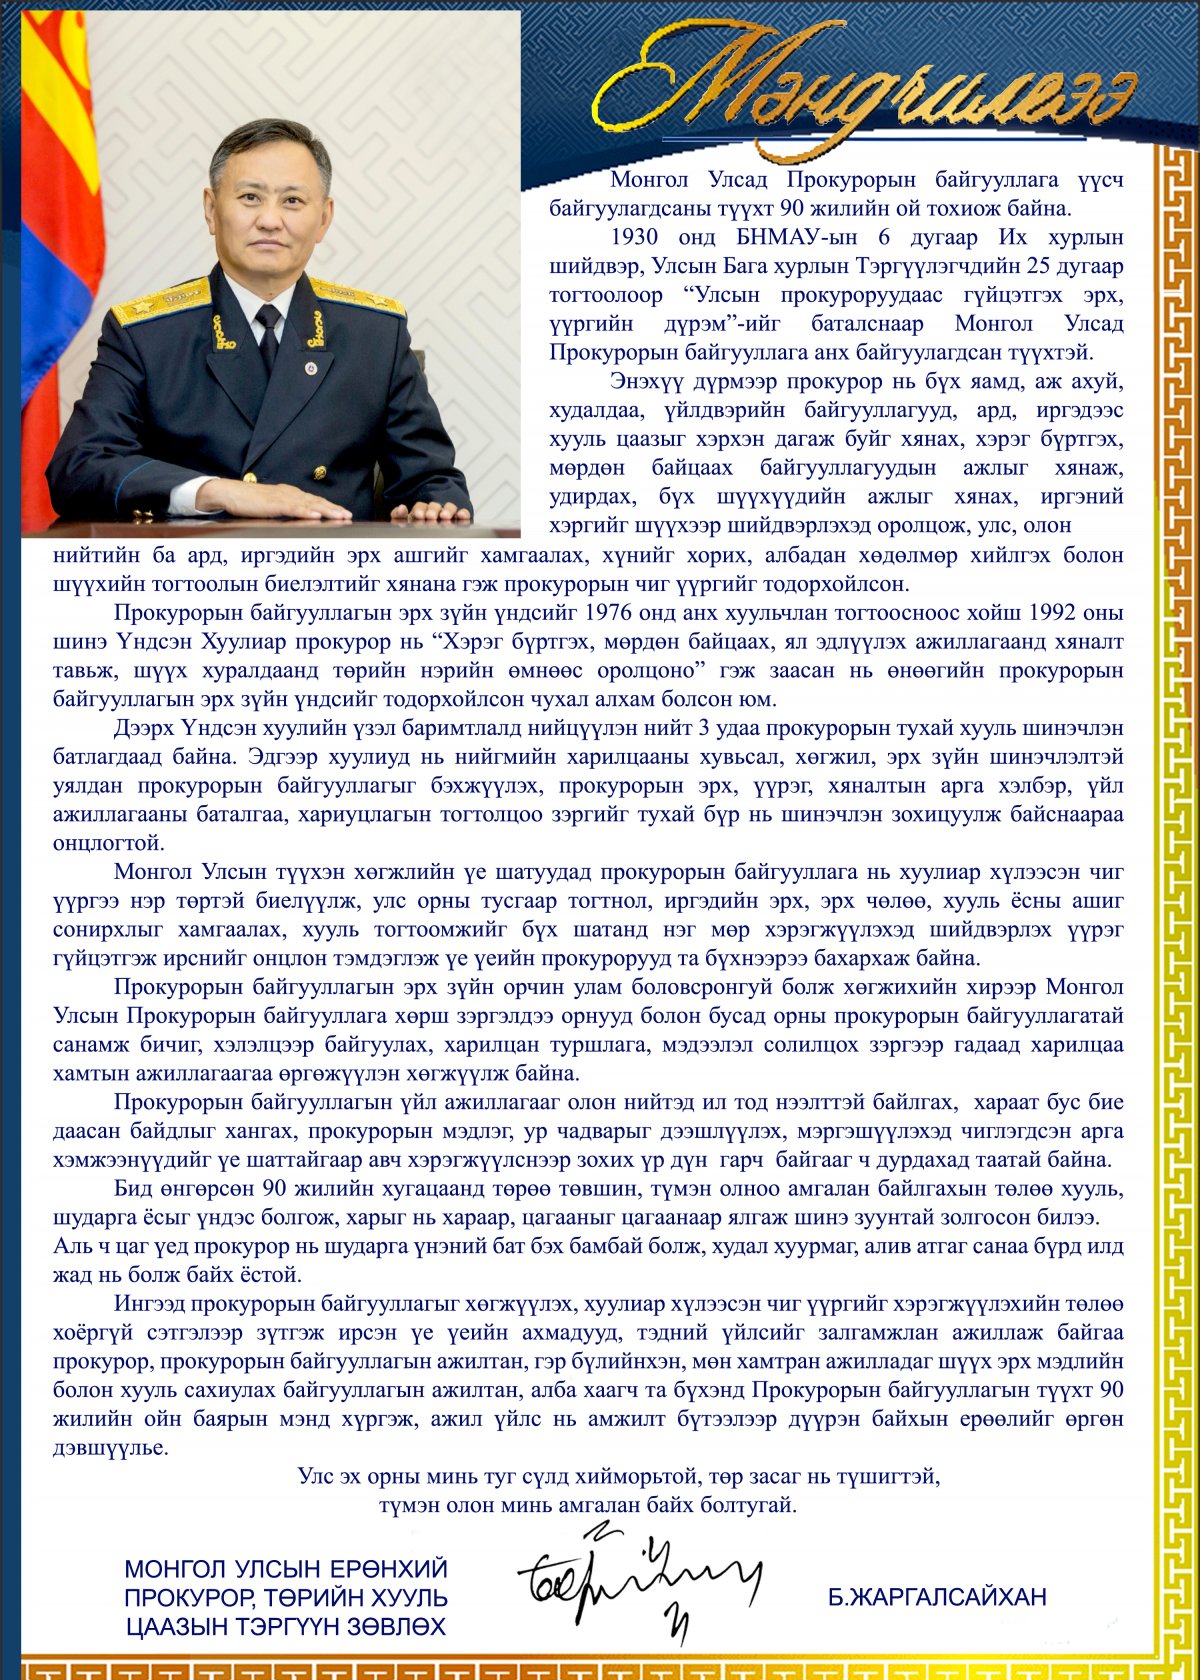 Монгол Улсын ерөнхий прокурор Б.Жаргалсайханы мэндчилгээ